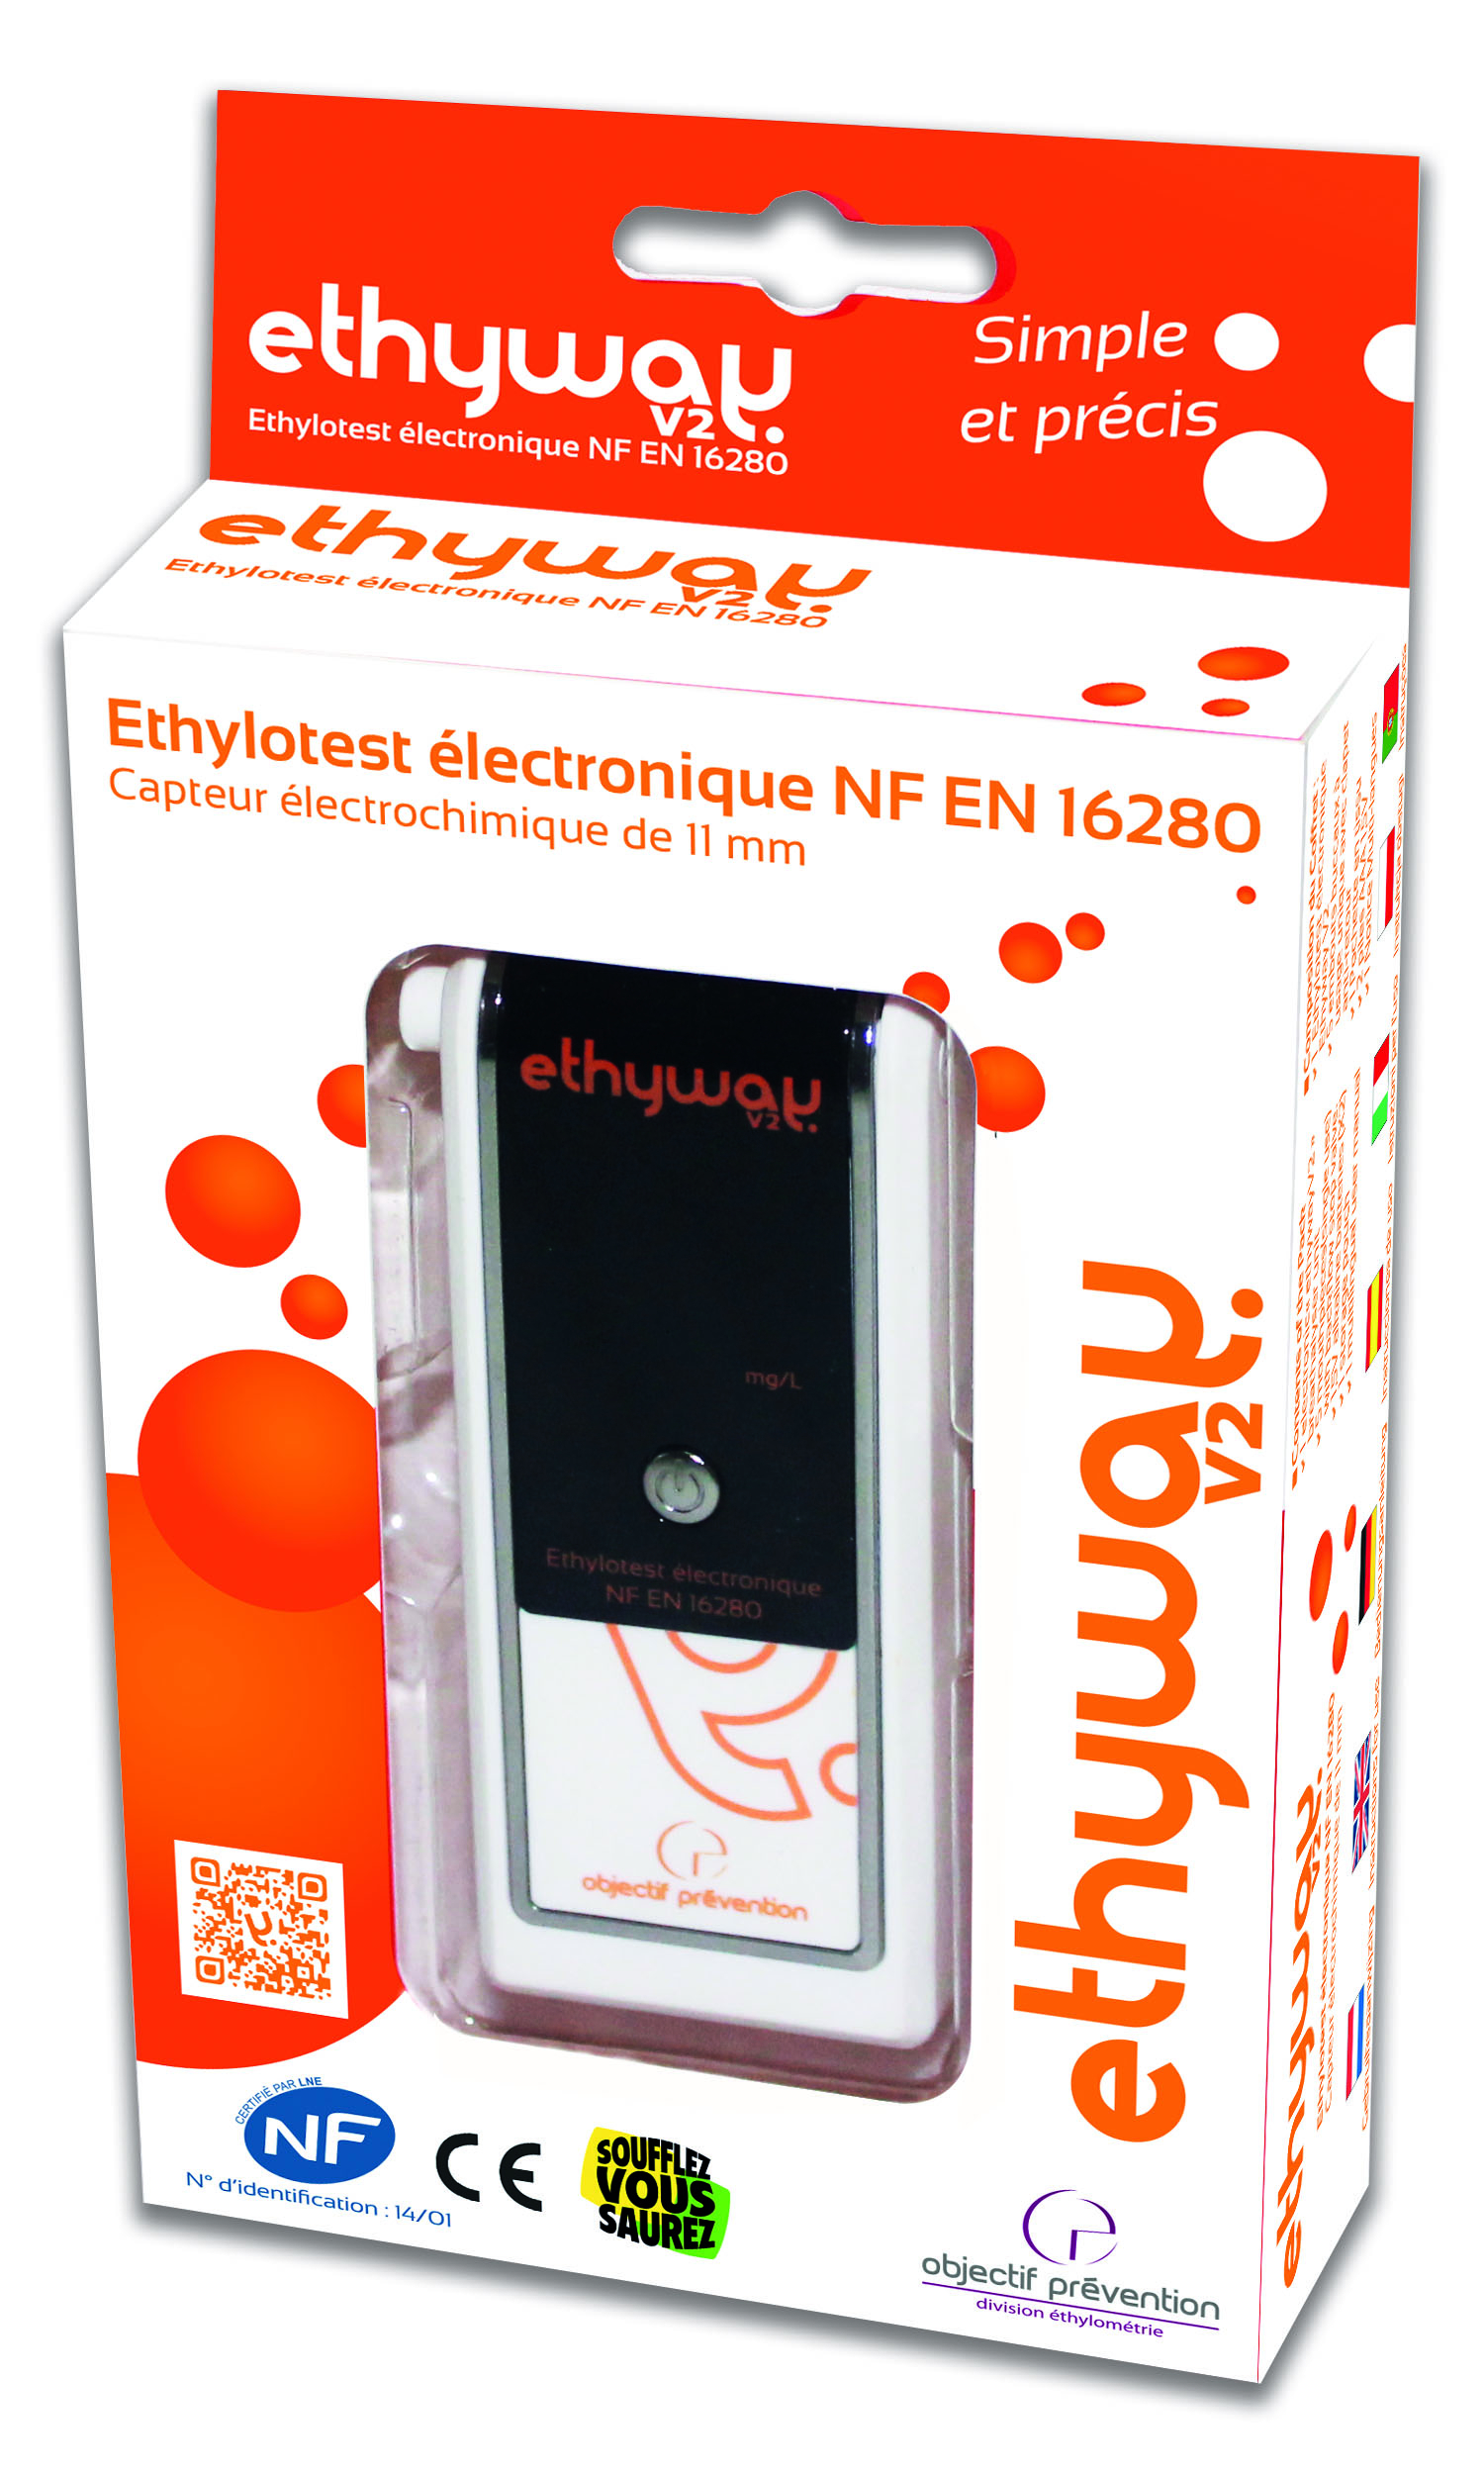 Ethyway ethylotest électronique - ethyway_0